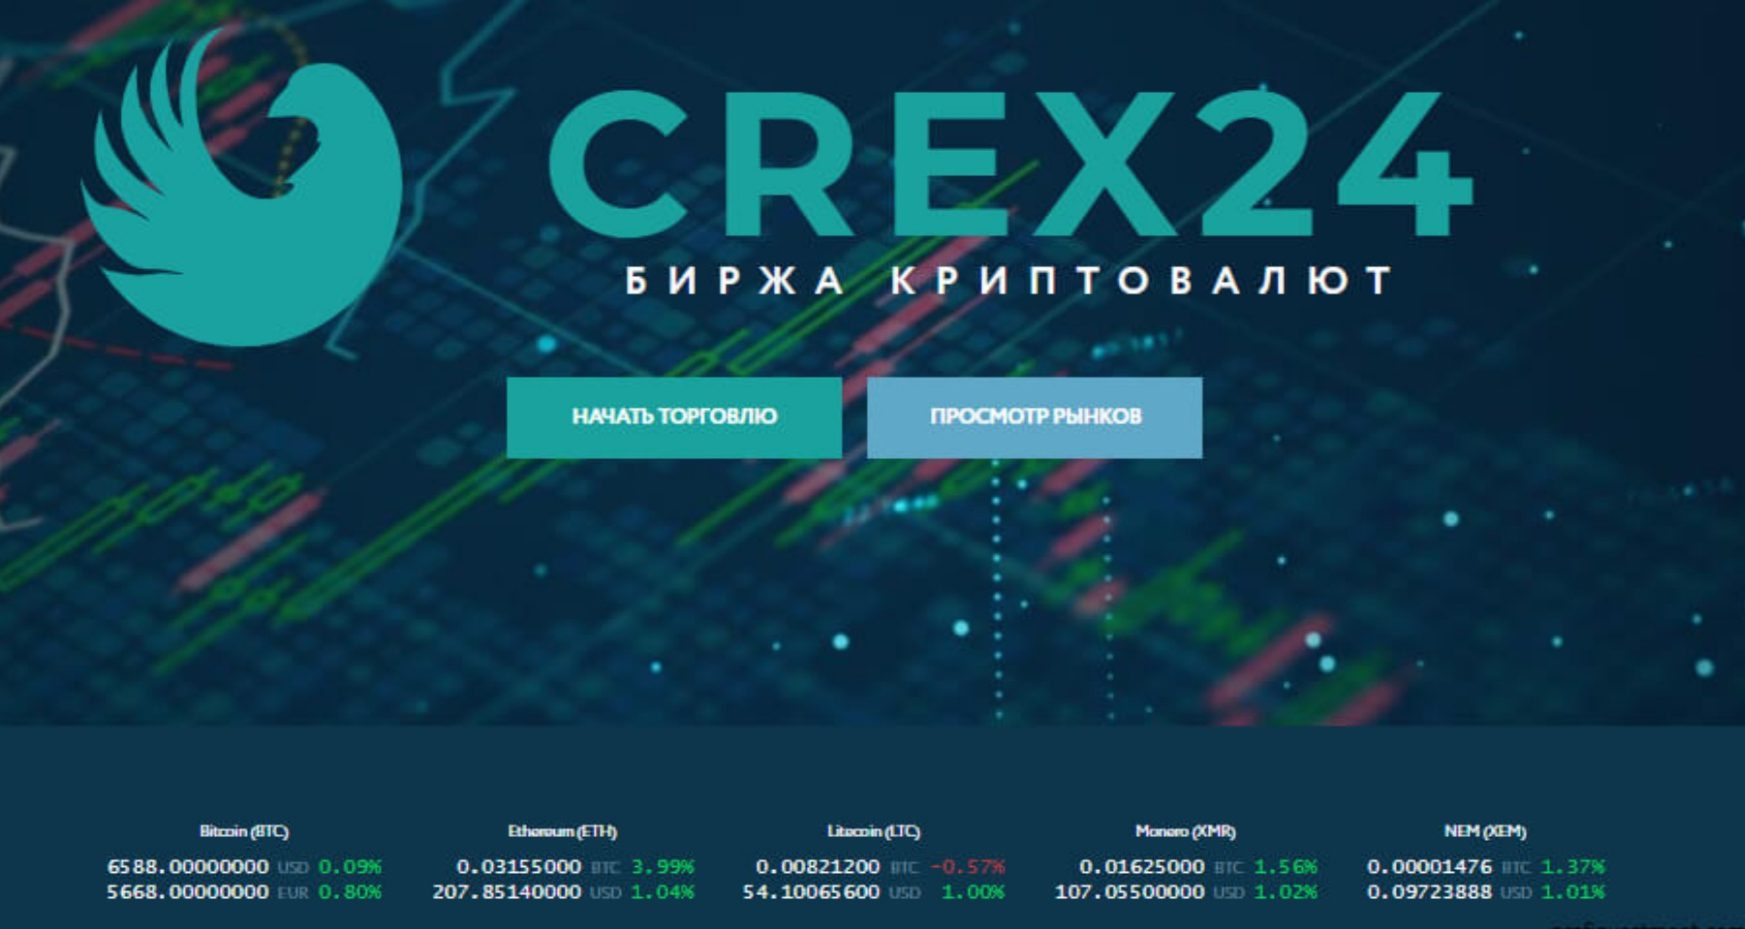 Crex24 сайт